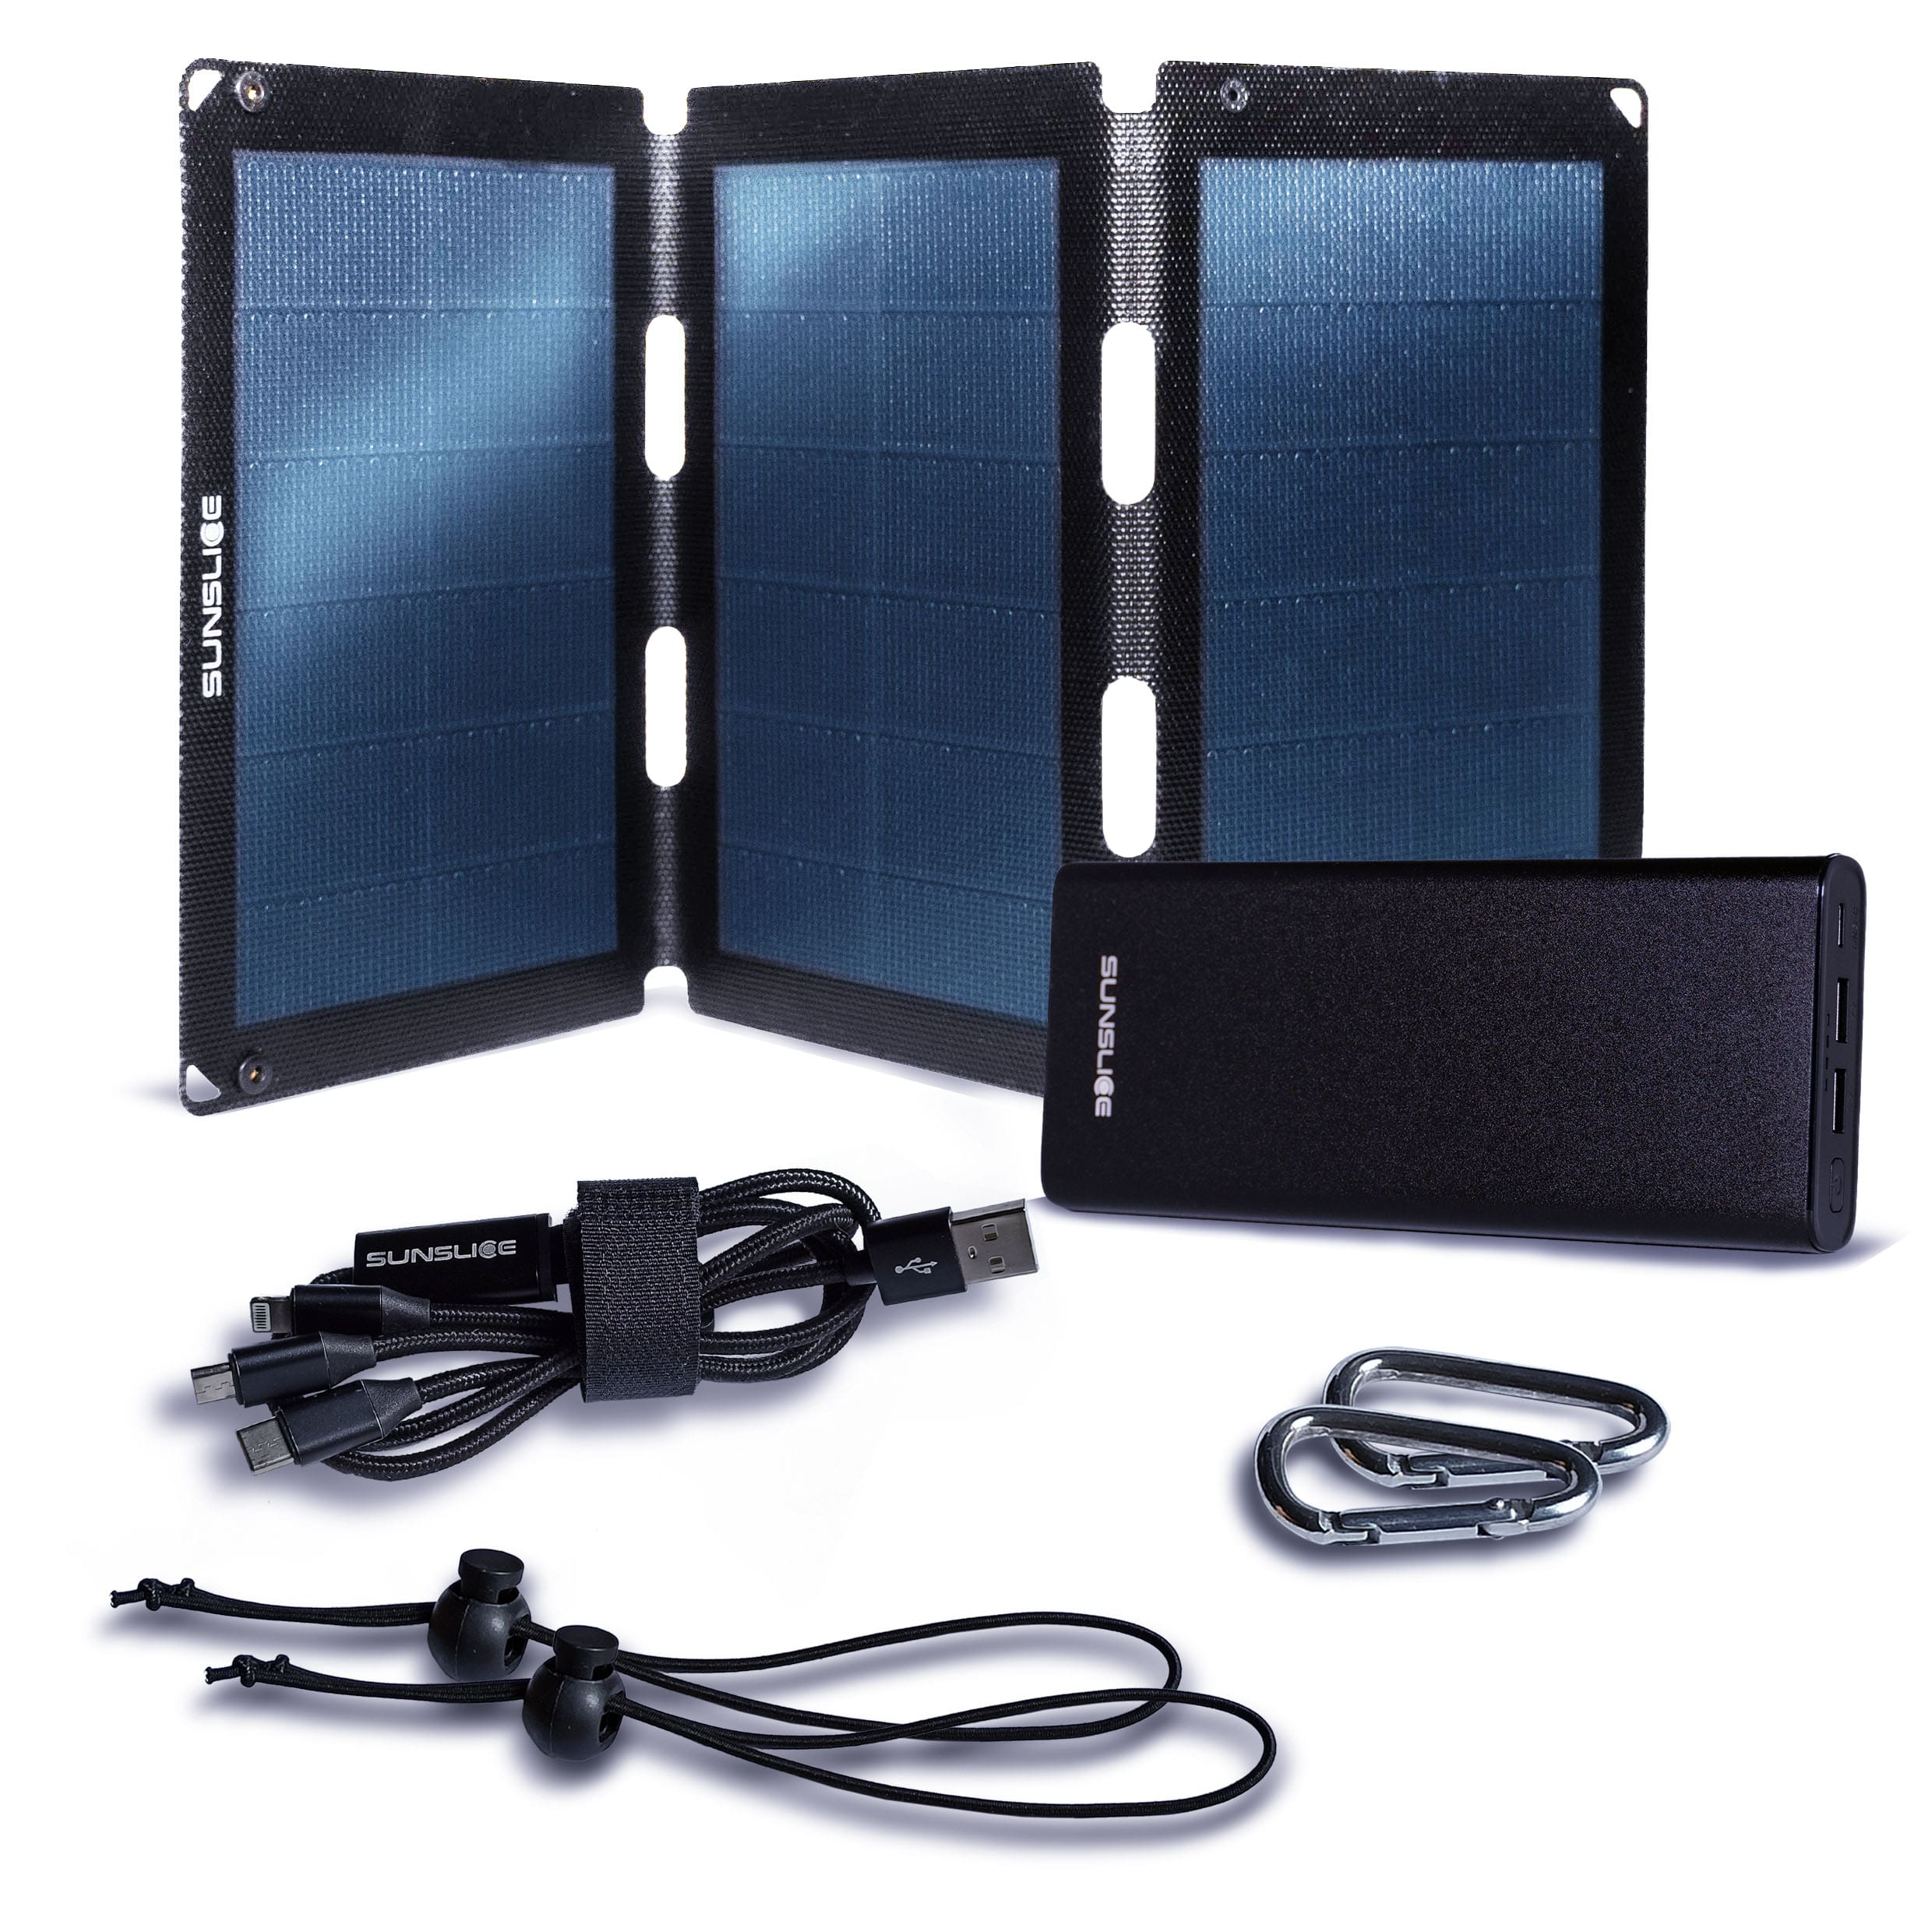 Kit met een zonnepaneel fusion flex 18 en een Gravity 100 powerbank voor laptop + 2 karabijnhaken, 2 elastieken, 1 drietandkabel